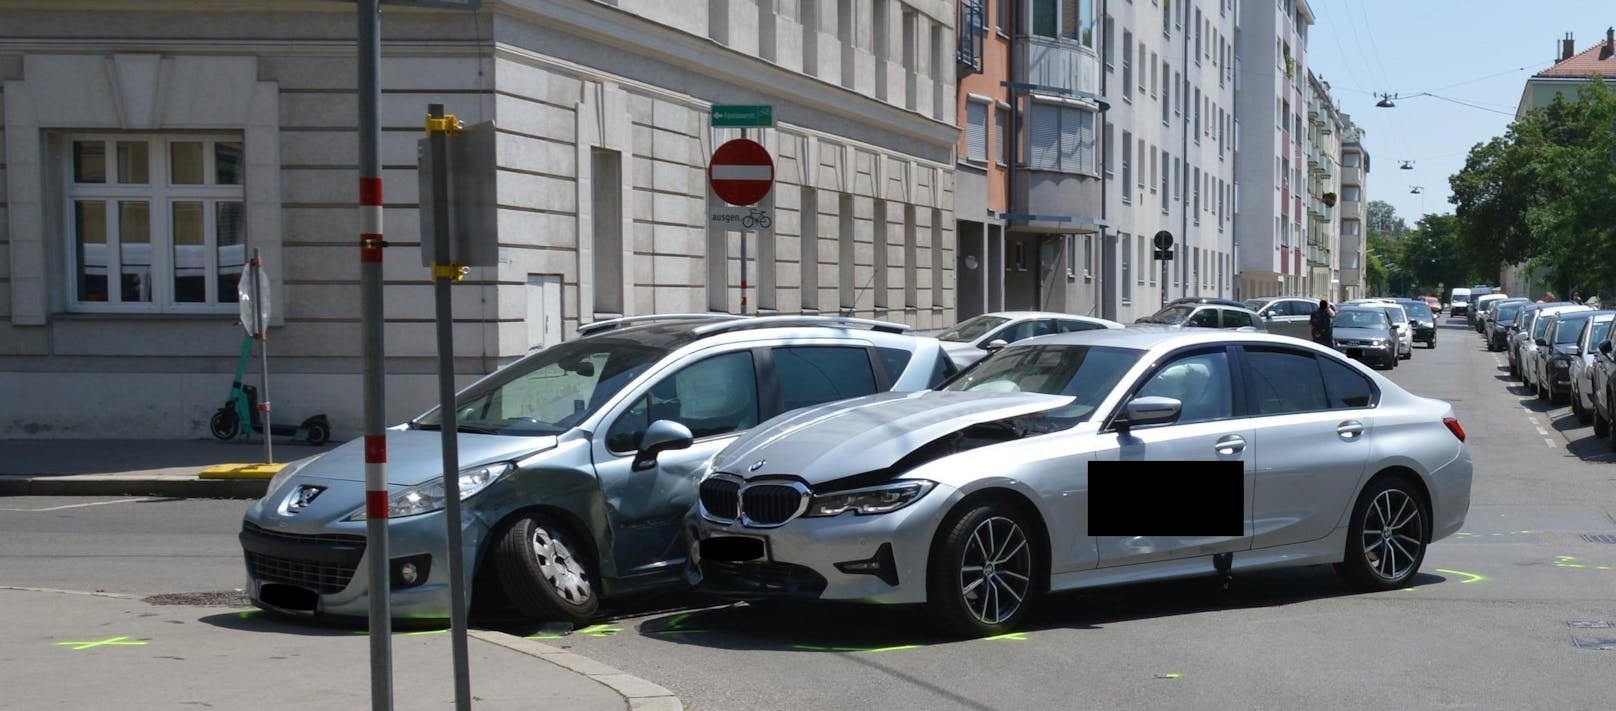 Heftiger Crash mit BMW in Wien – zwei Frauen verletzt